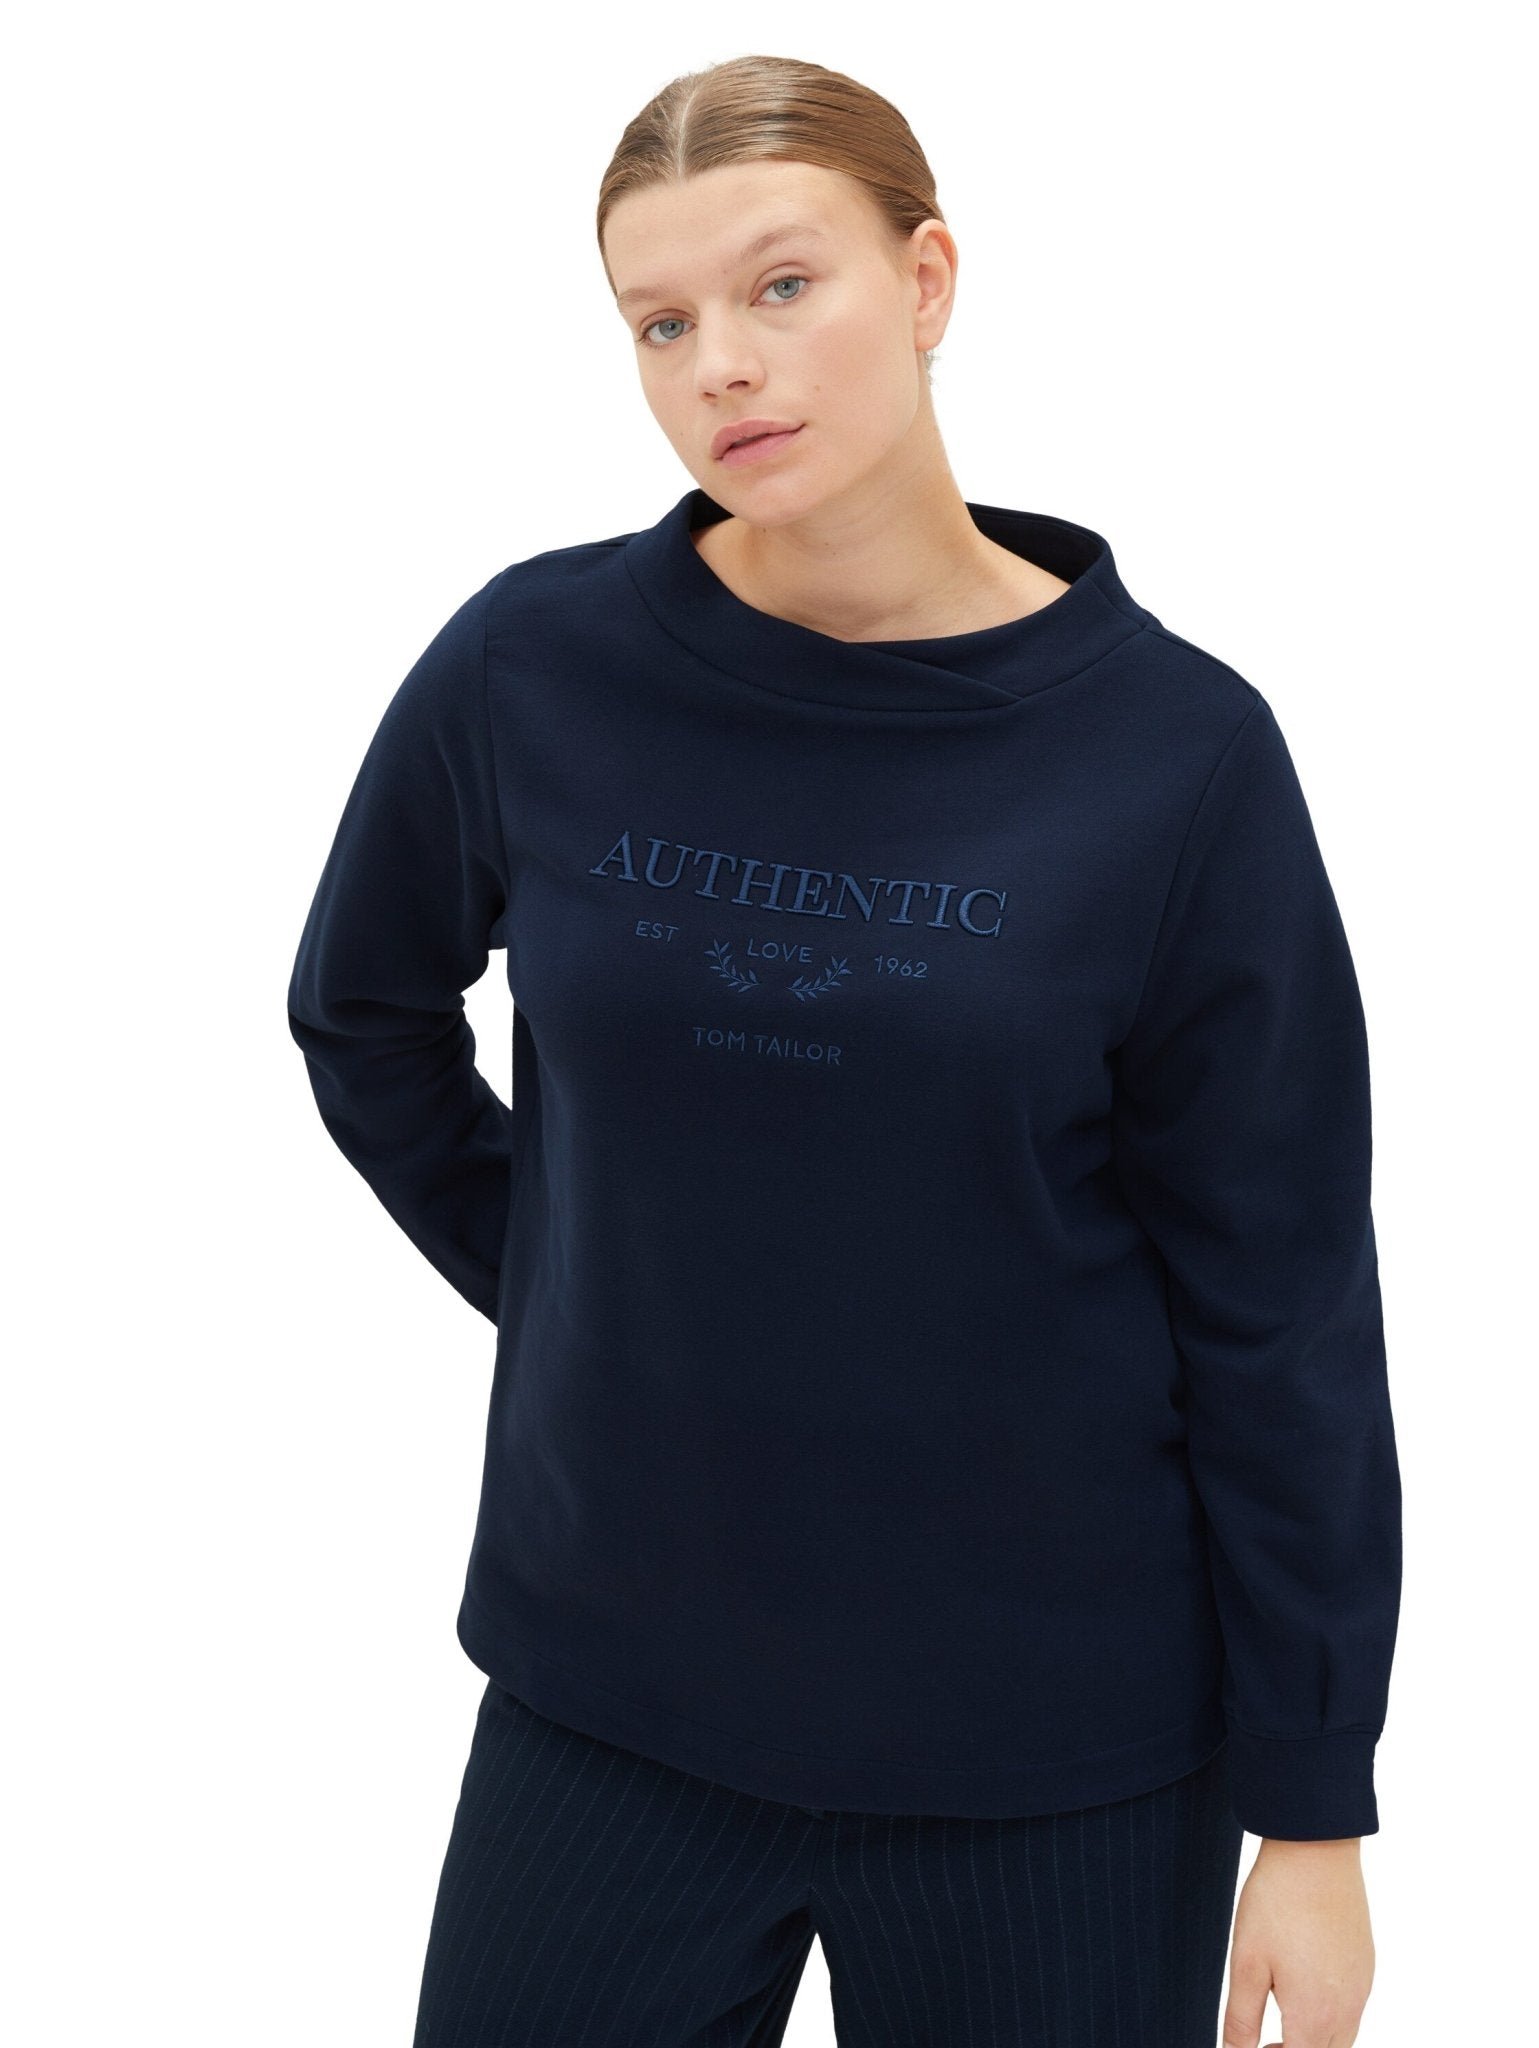 1040048Sweatshirt Dunkelblau mit Stickerei „Authentic“ - Wildflowers44Dunkelblau